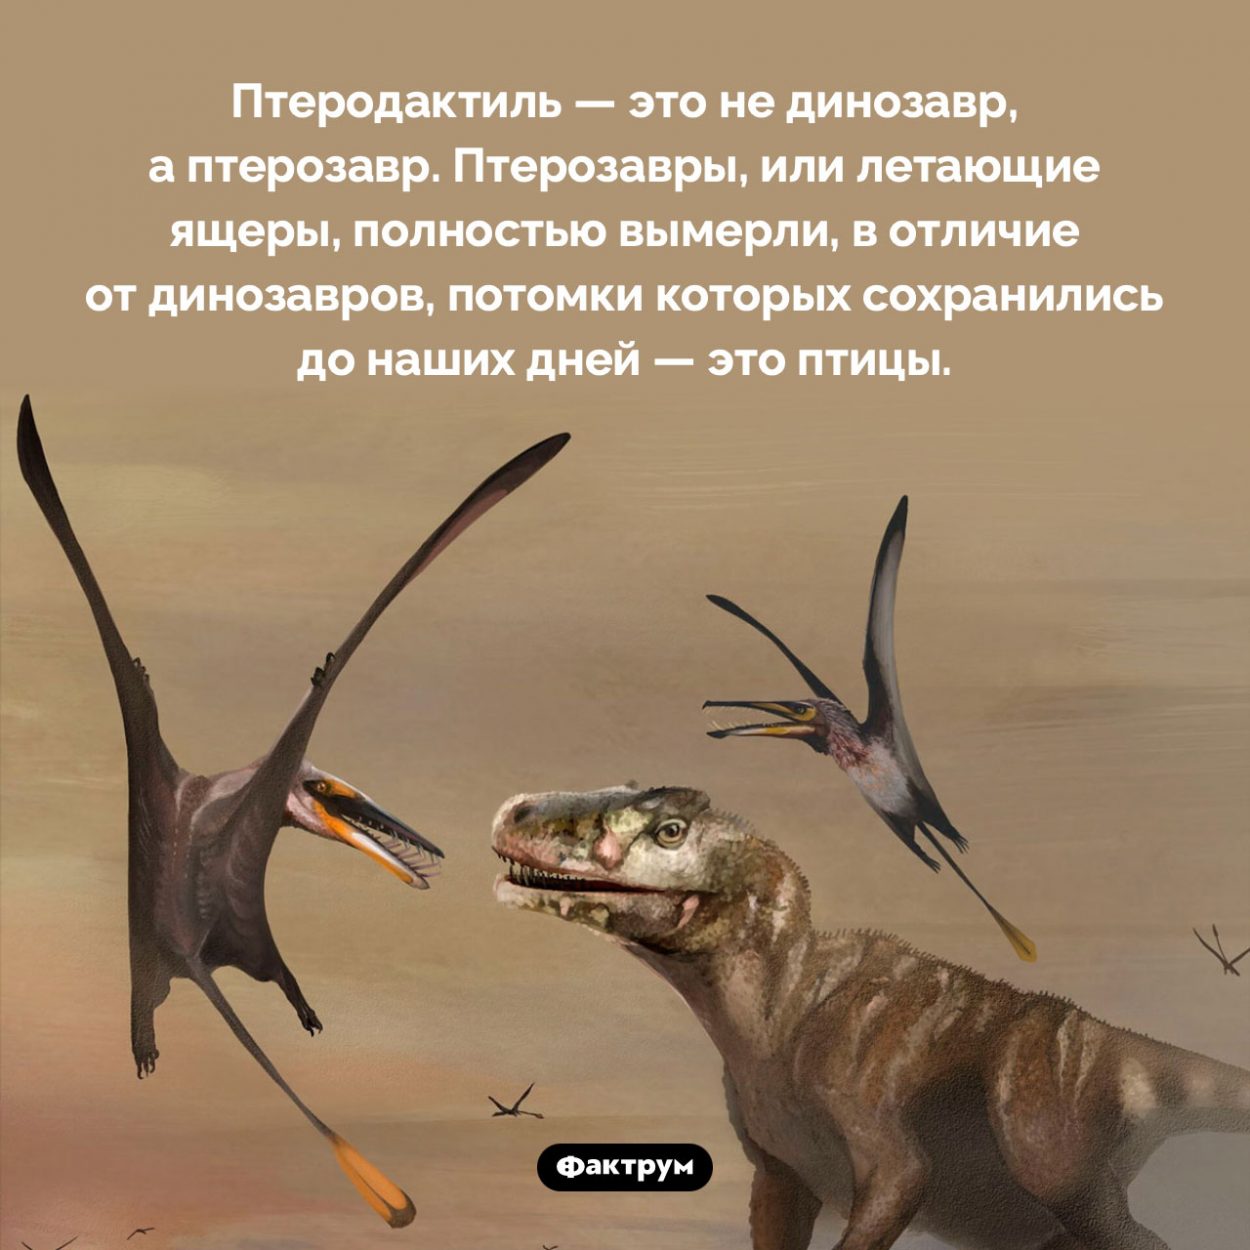 Птеродактиль — это не динозавр. Птеродактиль — это не динозавр, а птерозавр. Птерозавры, или летающие ящеры, полностью вымерли, в отличие от динозавров, потомки которых сохранились до наших дней — это птицы.